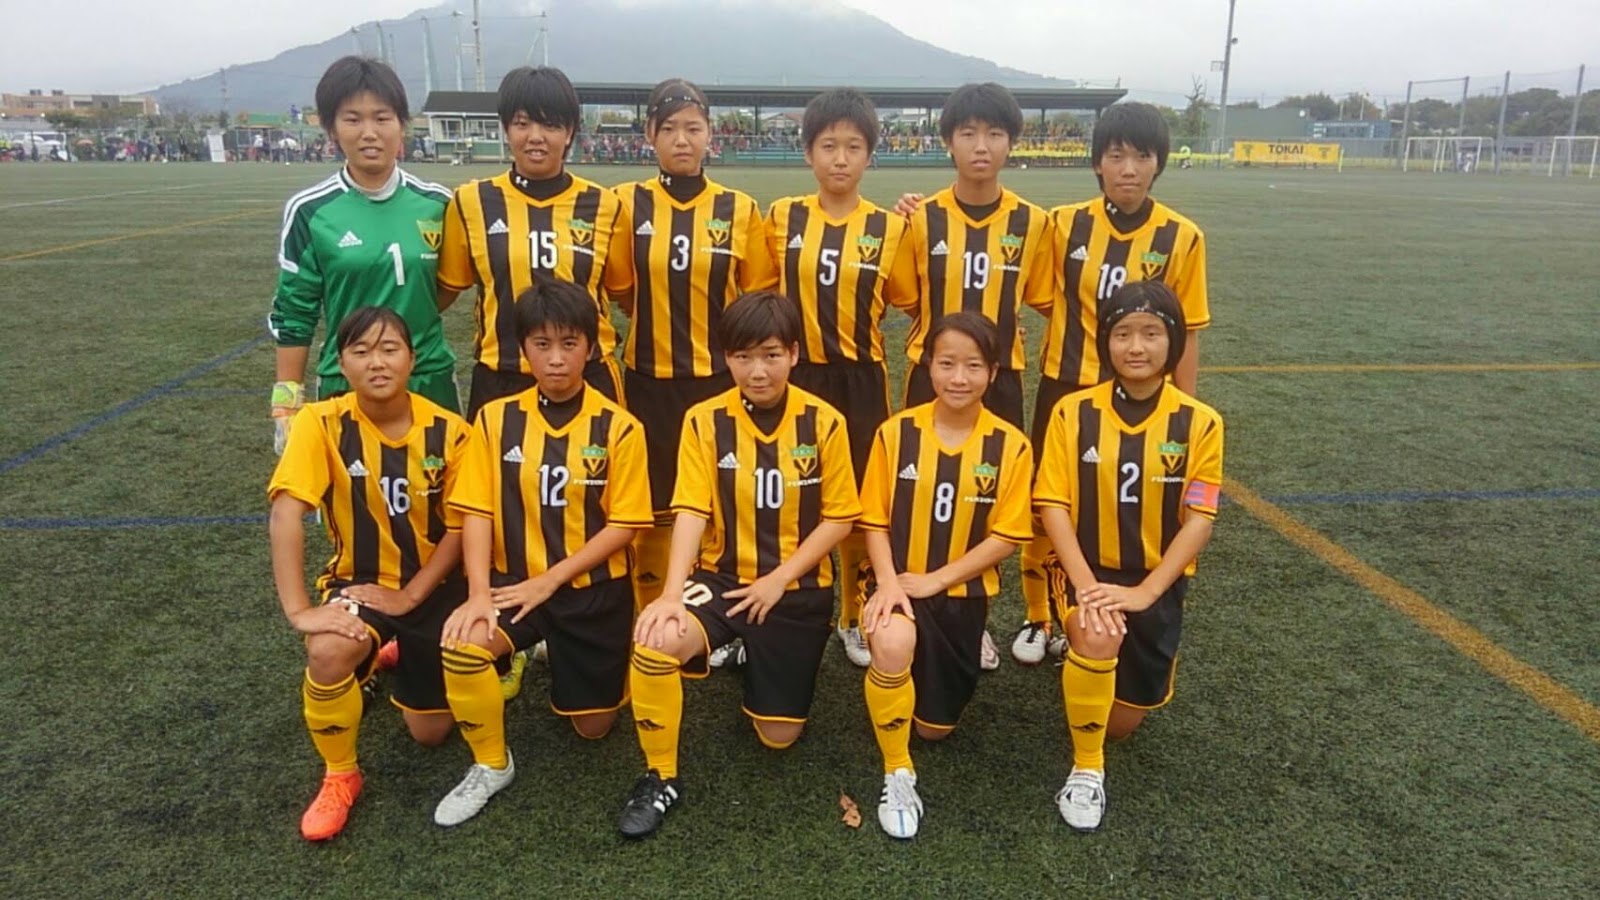 東海大福岡 女子サッカー部 Tokai Fukuoka Football Club 第27回 九州高等学校女子サッカー選手権大会 2回戦